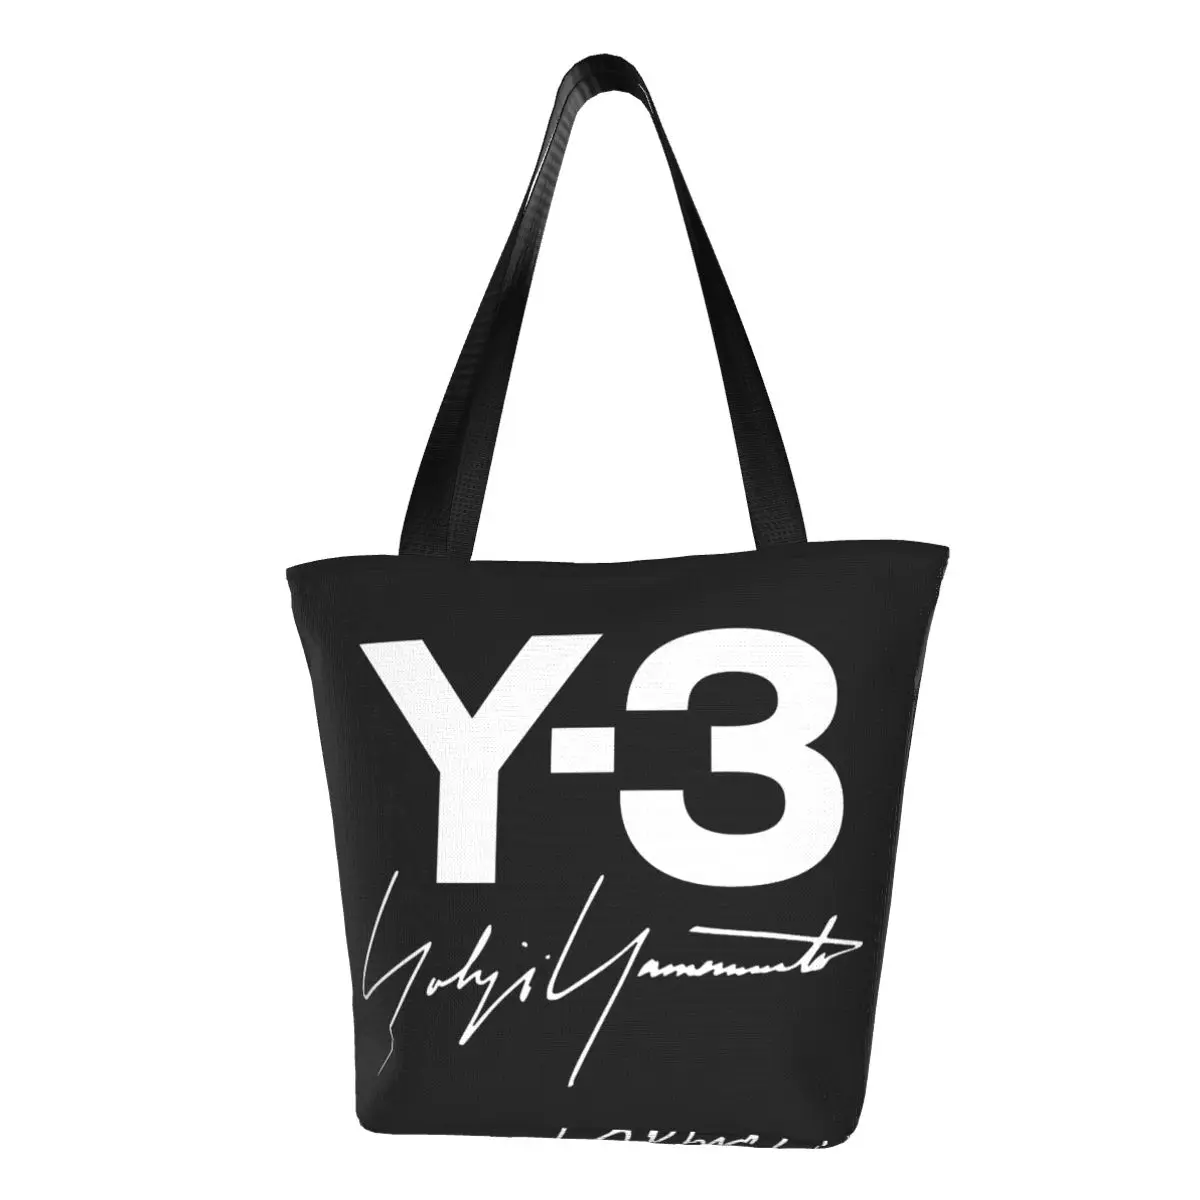 

Yohji Yamamoto Groceries Tote Shopping Bags Women Cute Canvas Shoulder Shopper Bags Large Capacity Handbags